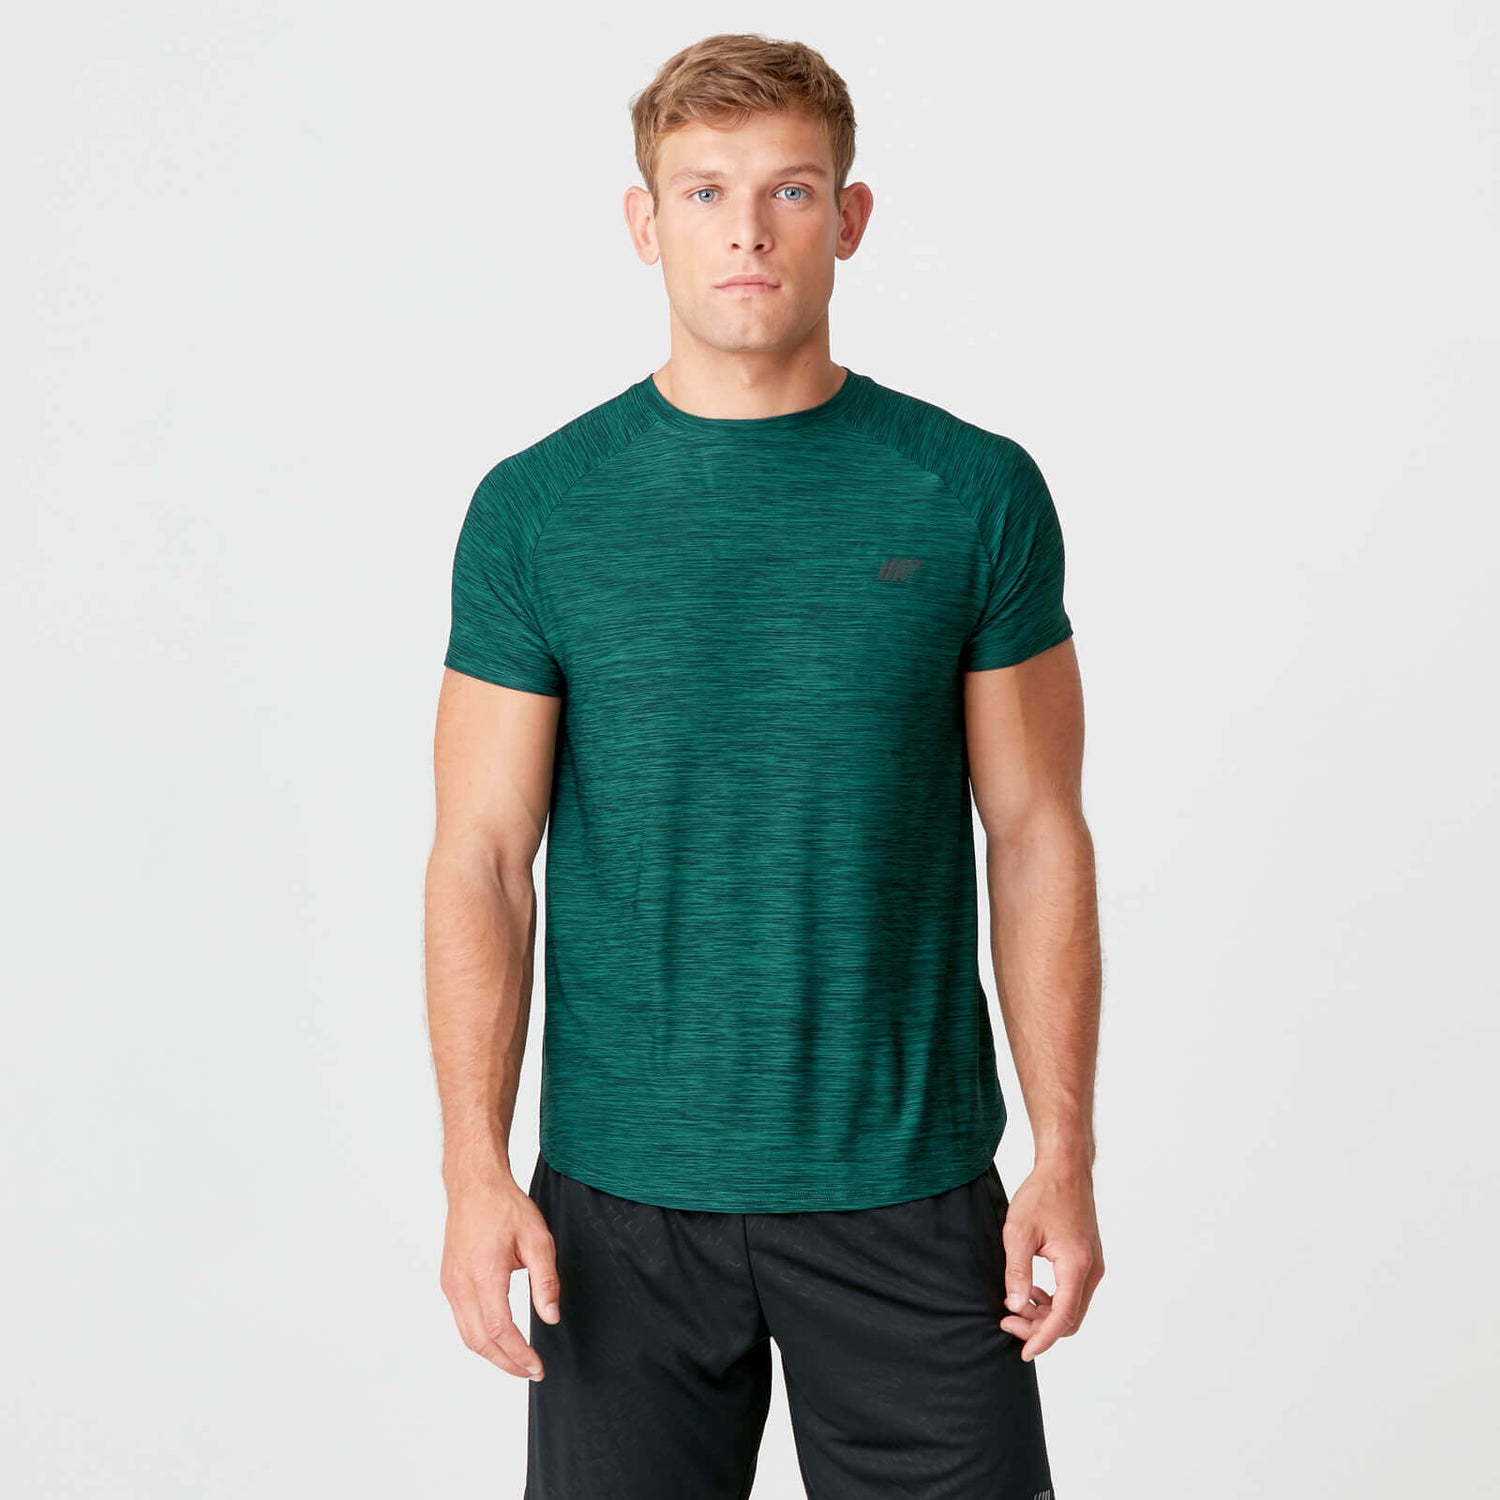 Buy Men's Dry-Tech Sweat-Wicking Gym Shirt, Green